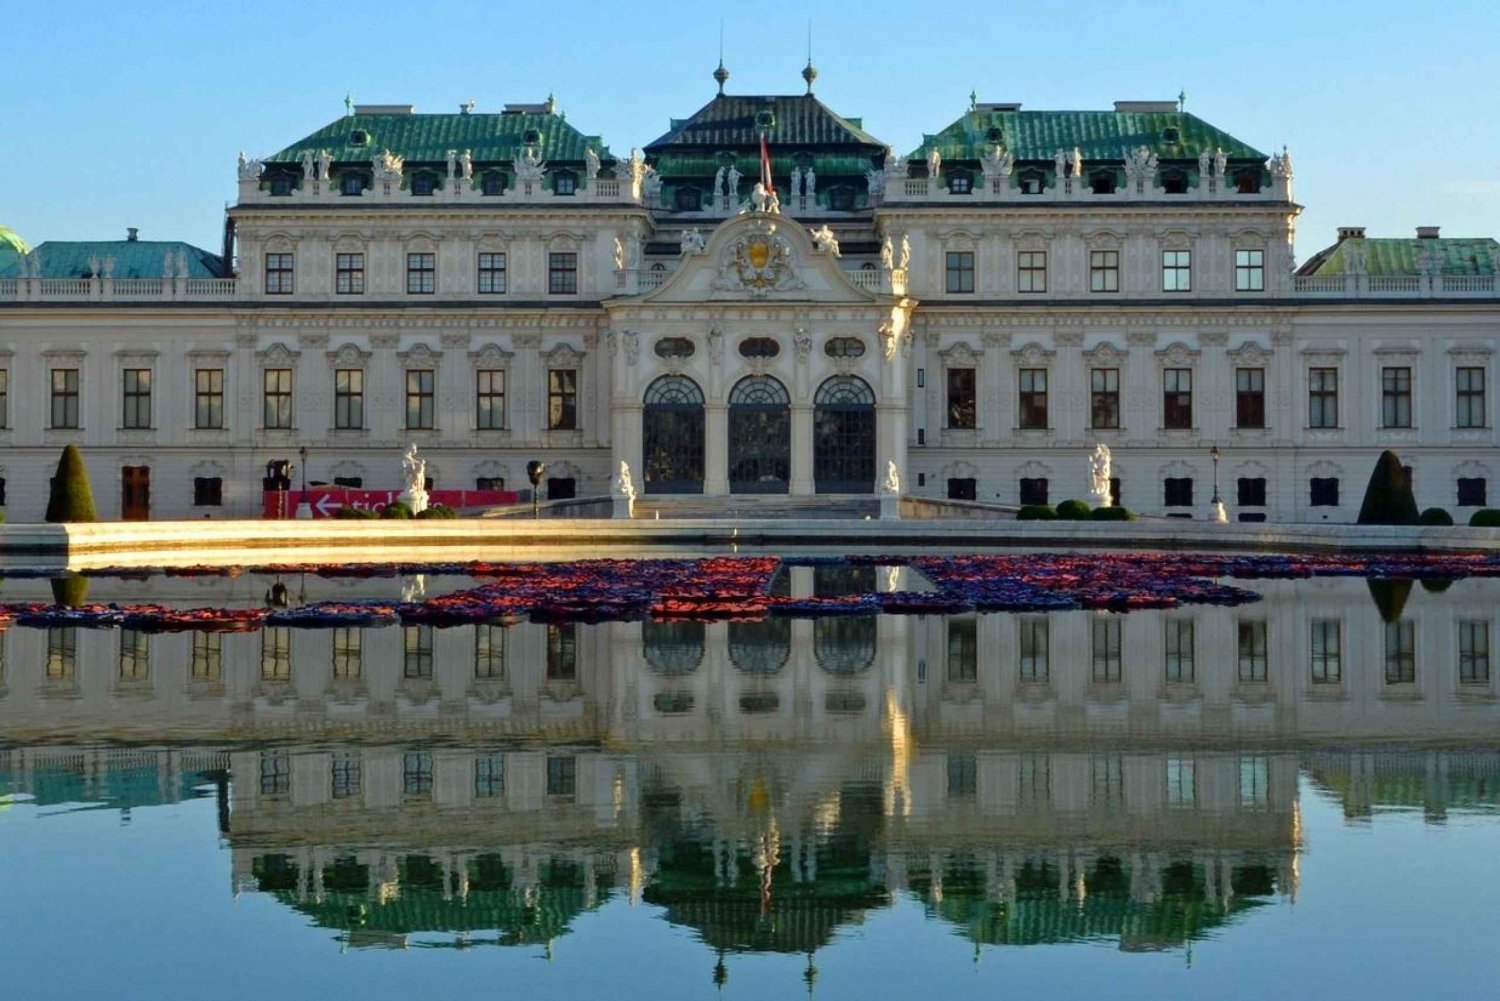 Viena: excursão autoguiada por mais de 100 pontos turísticos